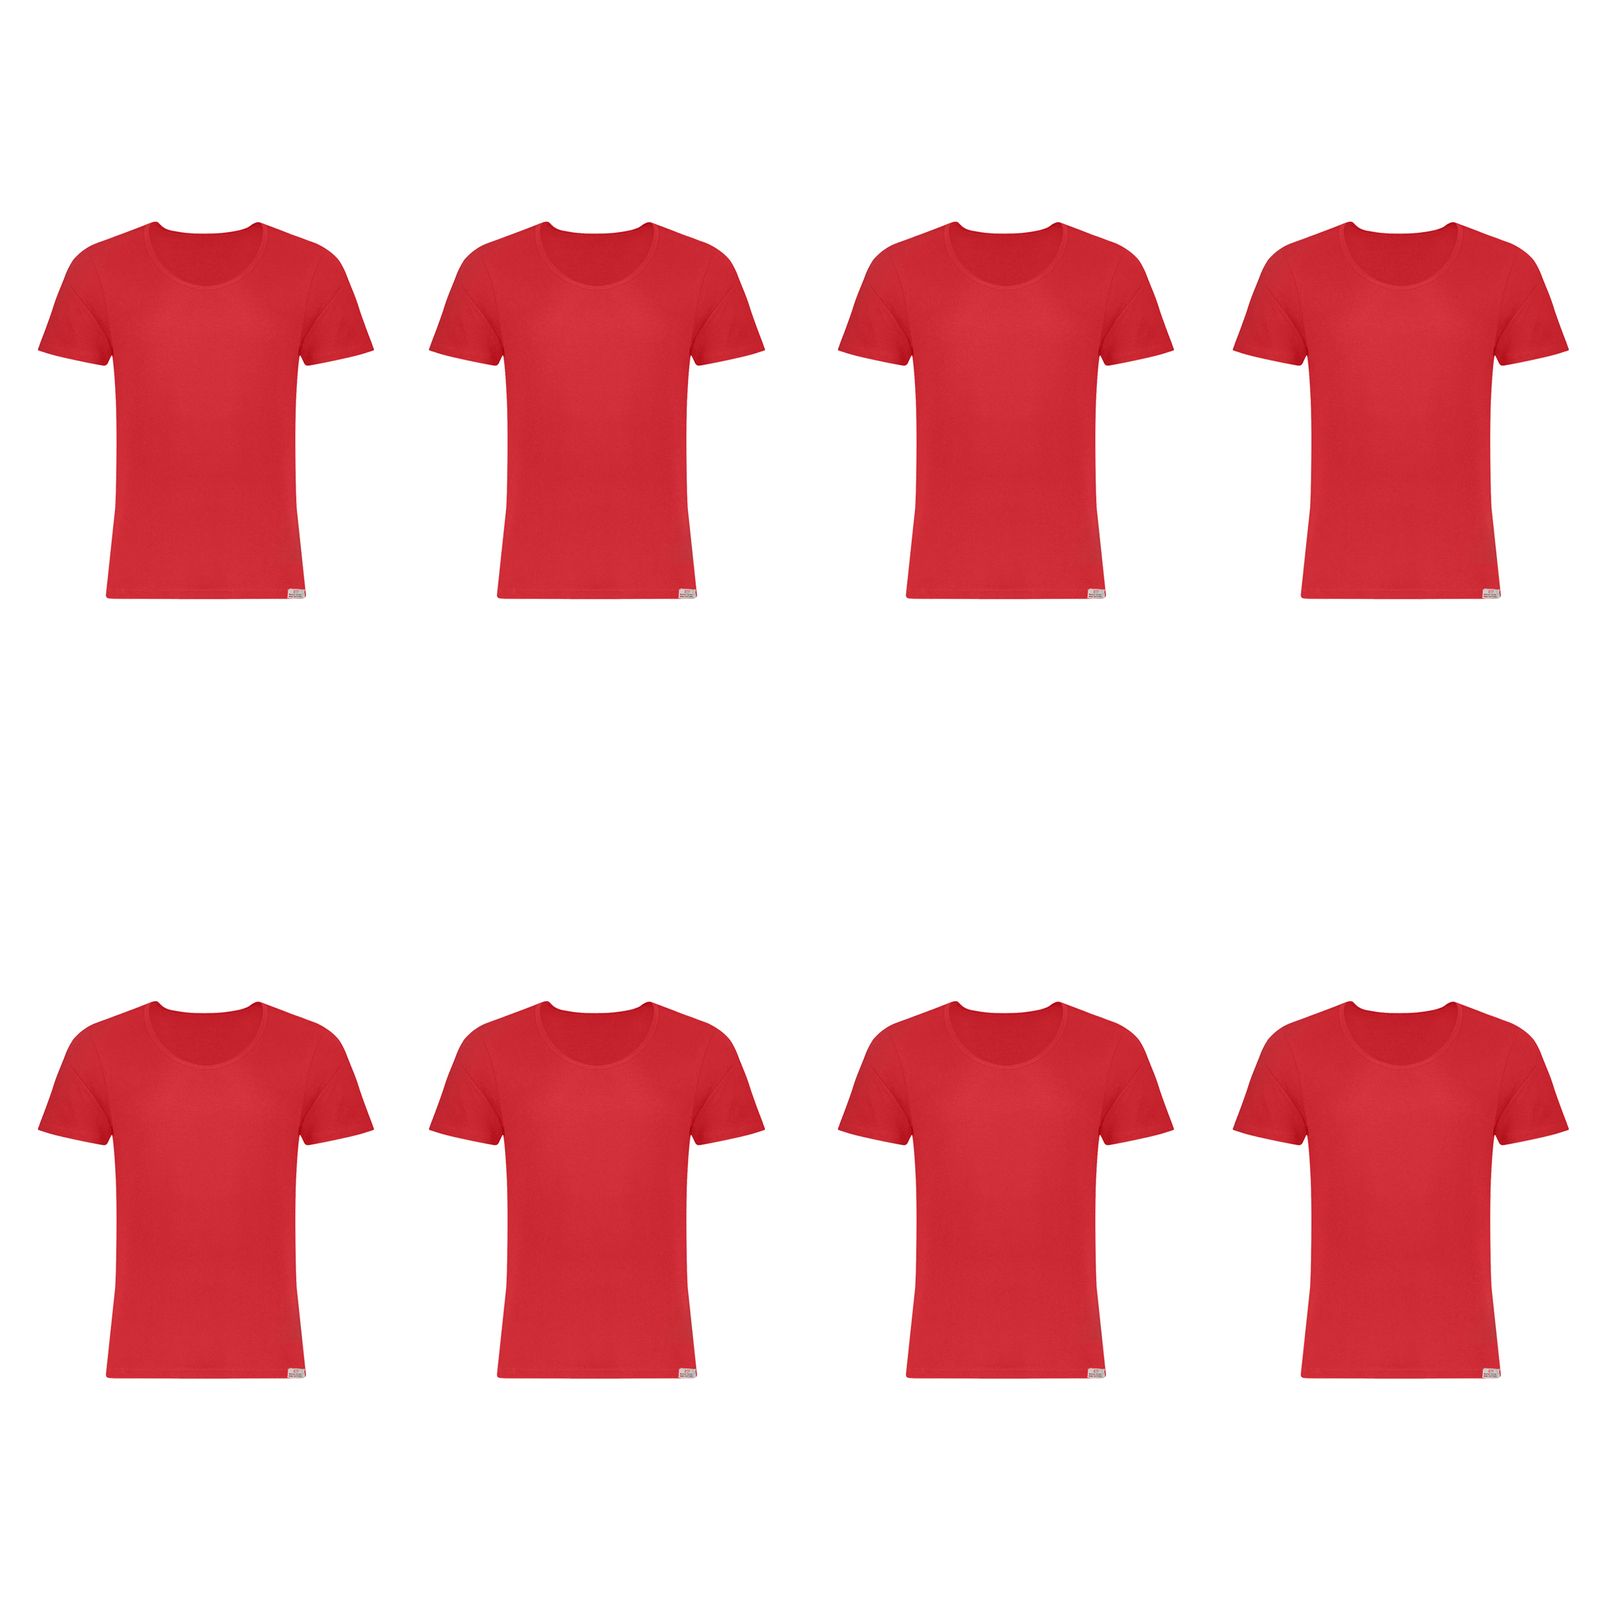 زیرپوش آستین دار مردانه برهان تن پوش مدل 2-02 رنگ قرمز بسته 8 عددی